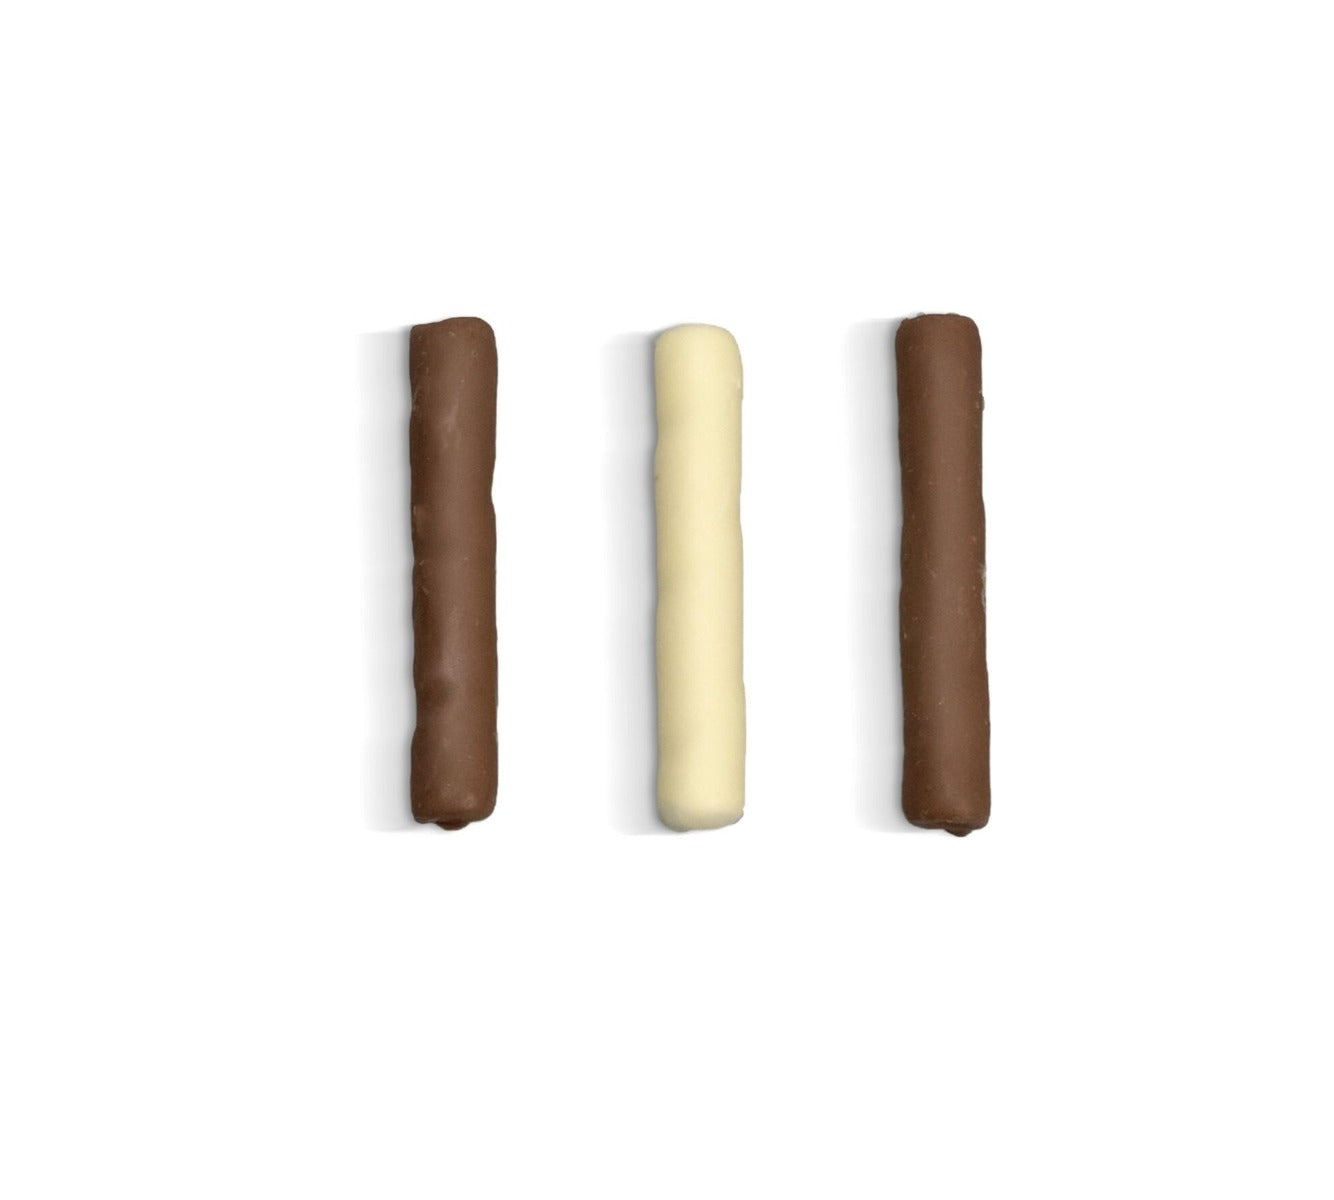 La Despensa de Palacio Canalillos Spanish Chocolate Cigars in Decorative Tin—Los Trillizos 65g